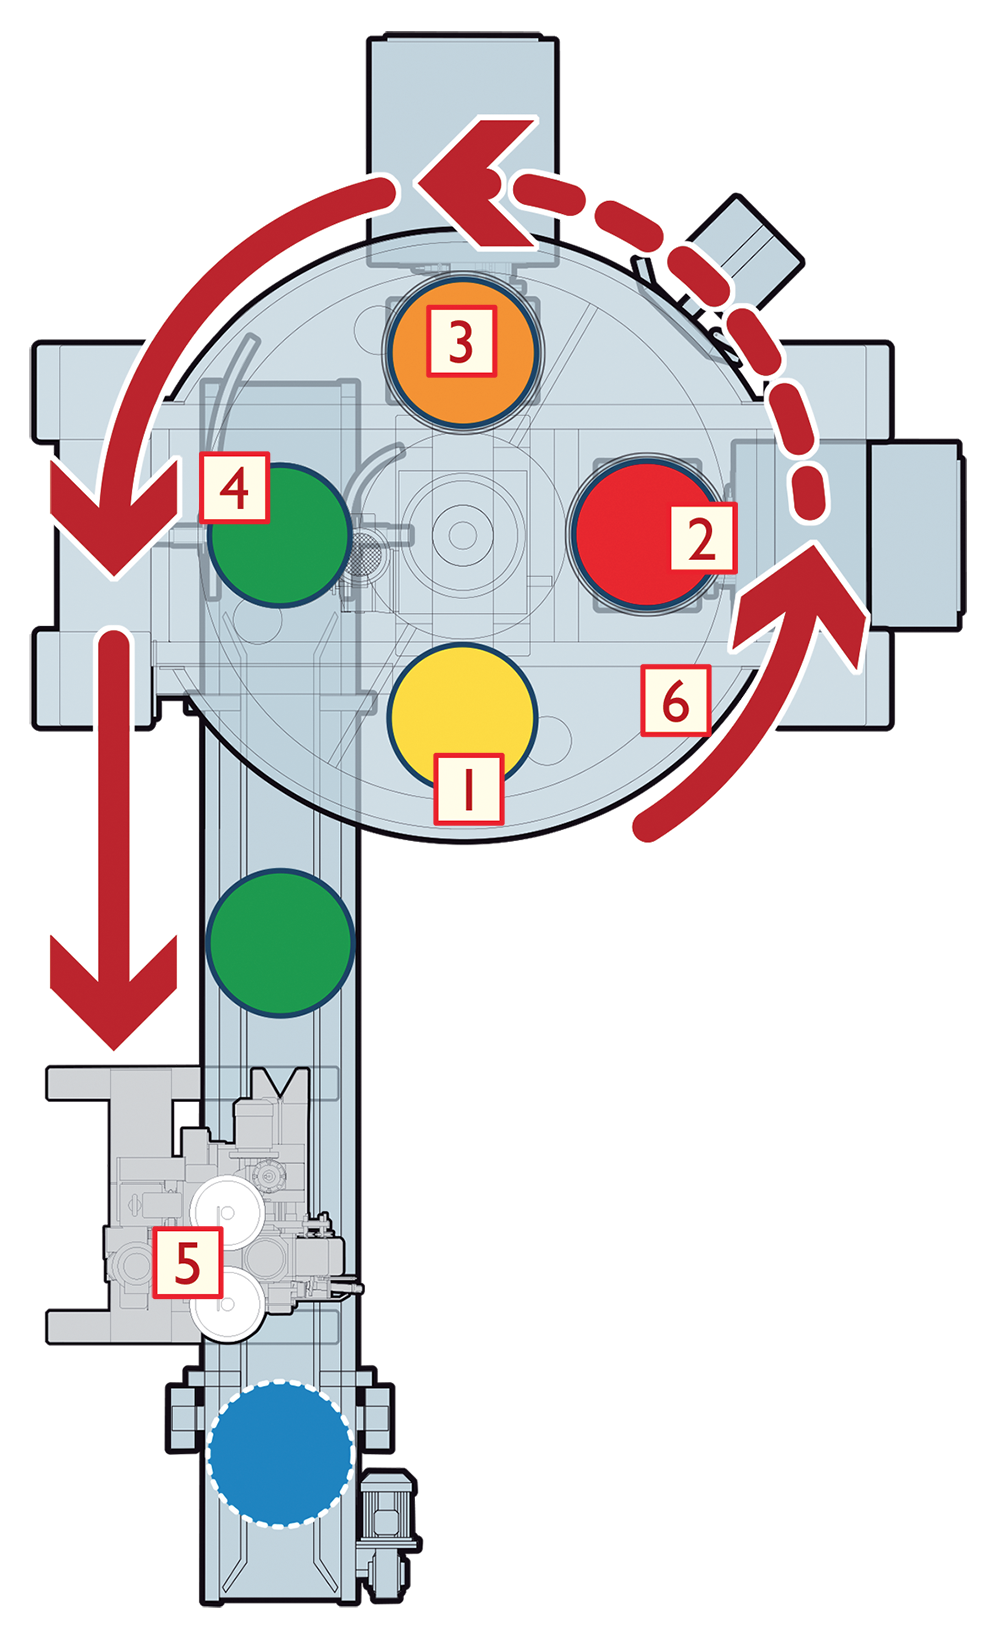 Φάσεις λειτουργίας του συσκευαστικού Technipes ASTRO 4 Carousel